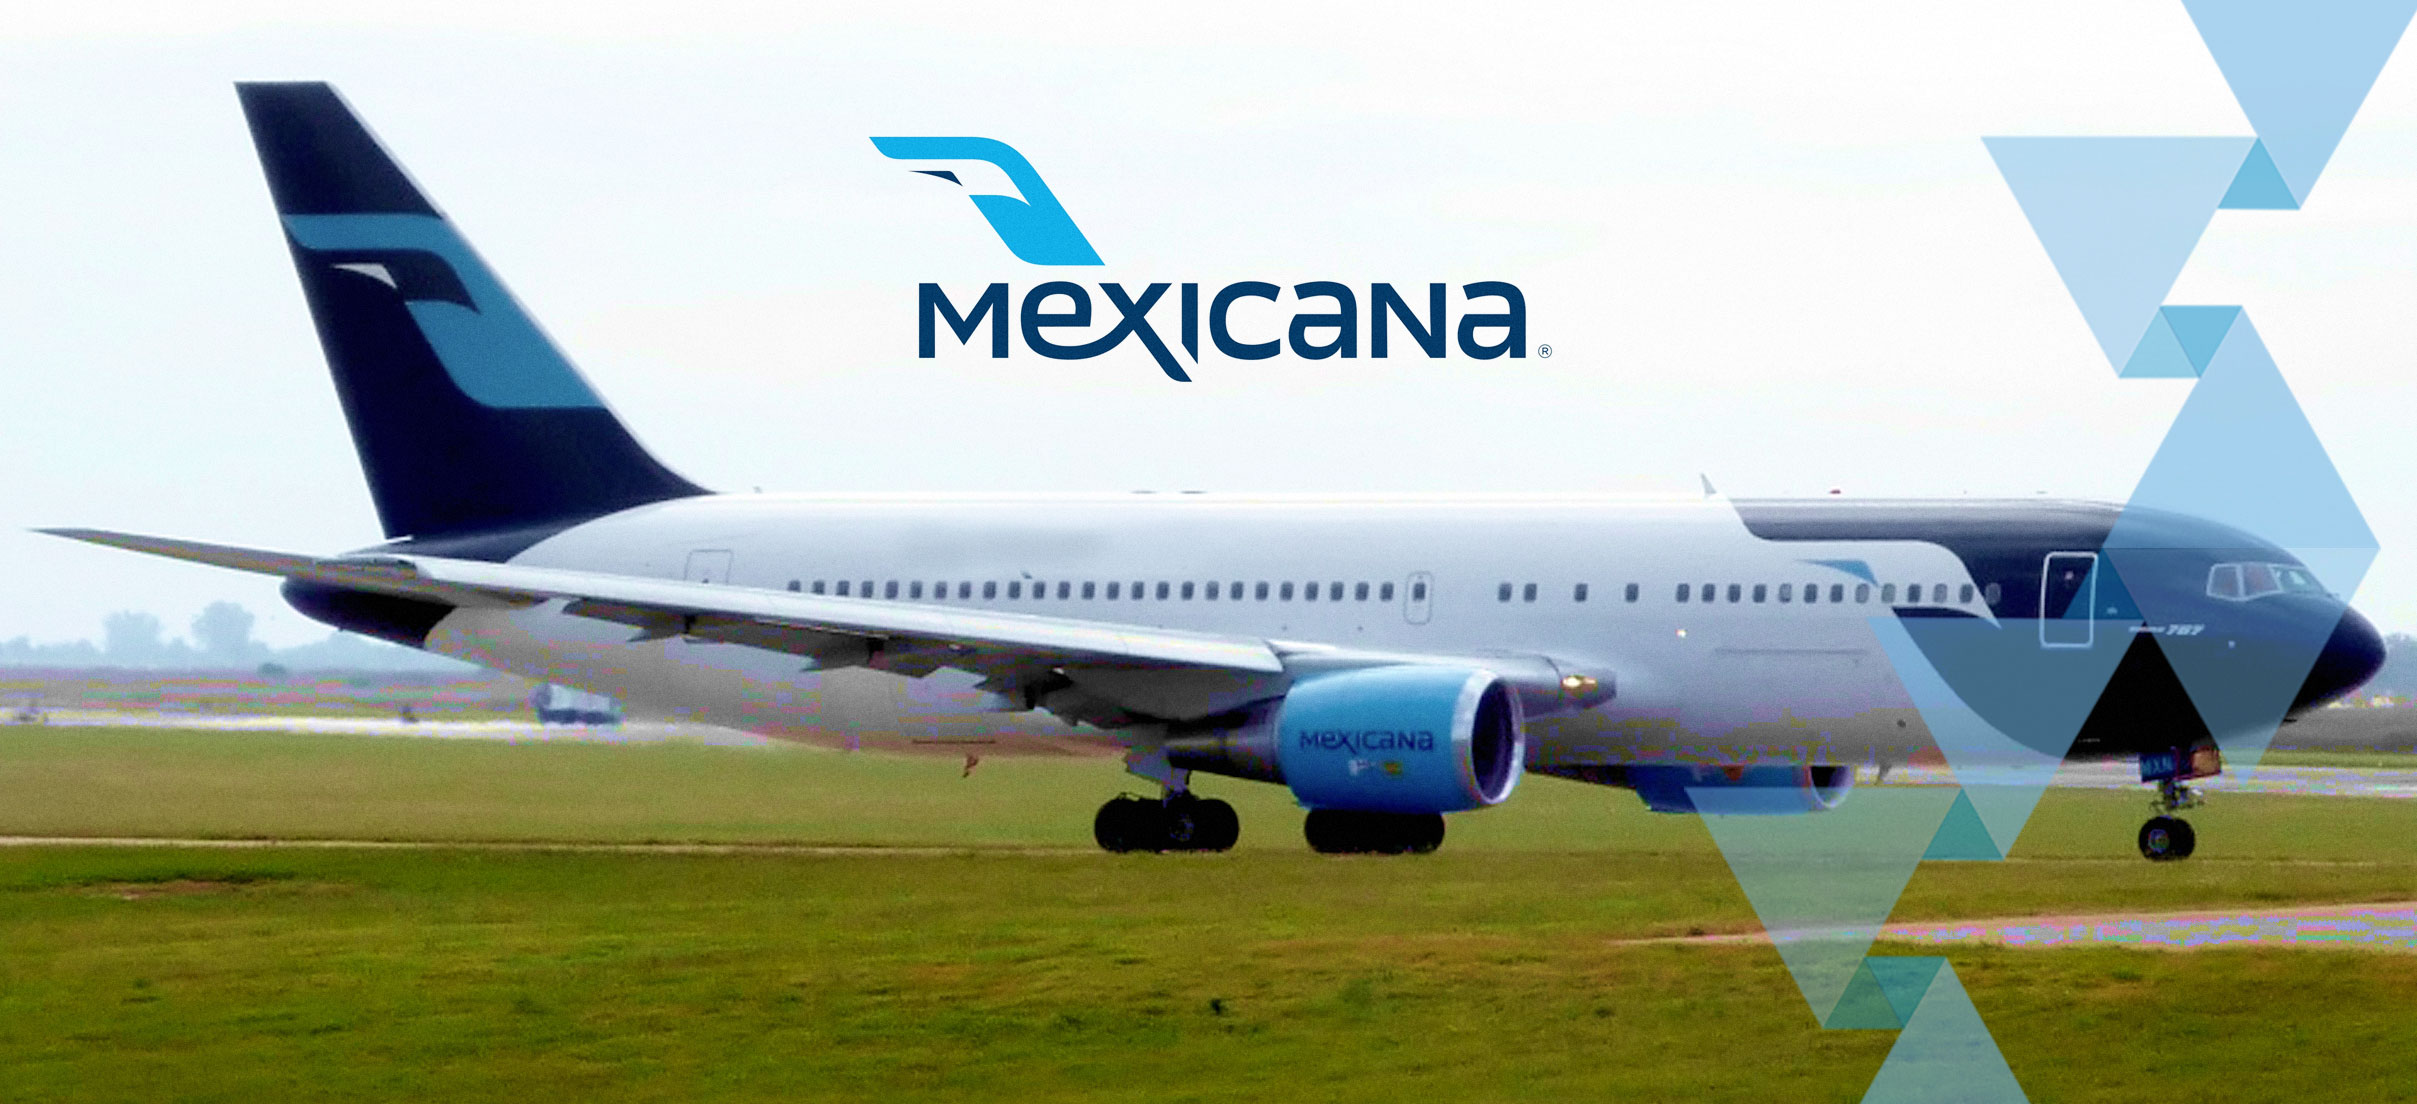 Justicia pendiente en caso Mexicana, pago de salarios es un “pequeño”  triunfo | Aviación 21